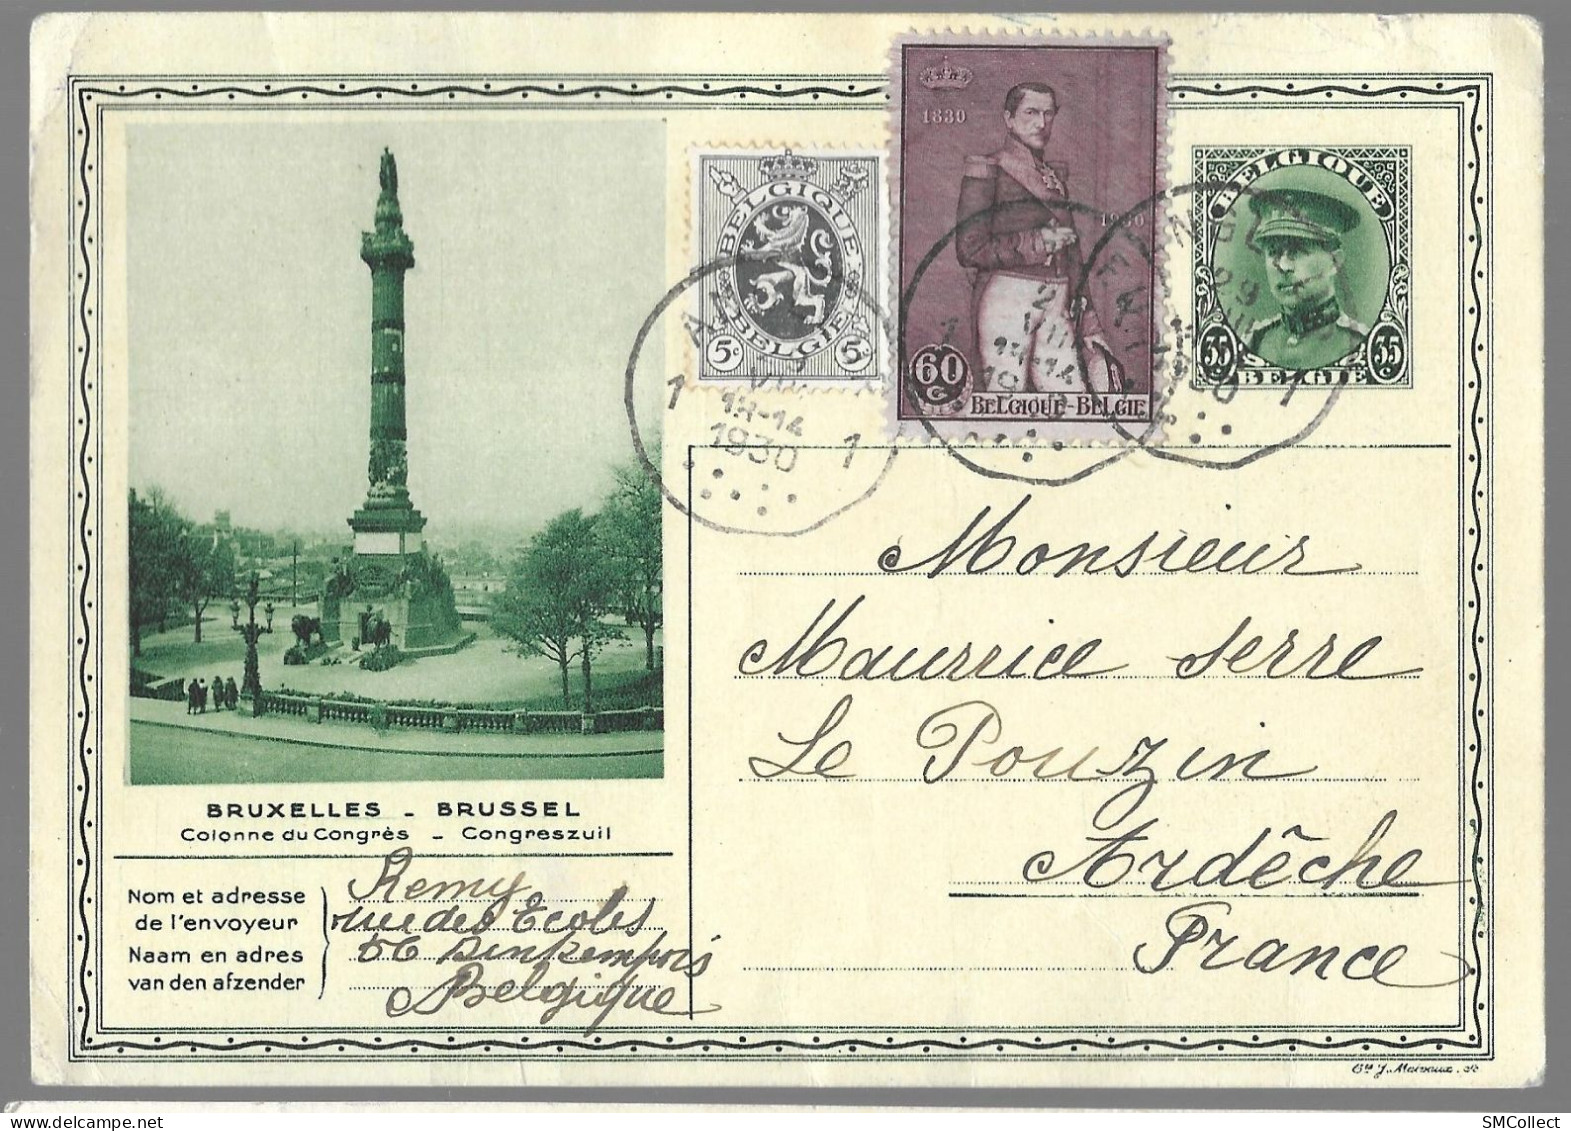 Belgique, Entier Postal "colonne Du Congrès" 35 Centimes + Complément De 65 Centimes (étranger) TAD 1930 (GF3919) - Cartes Postales 1909-1934